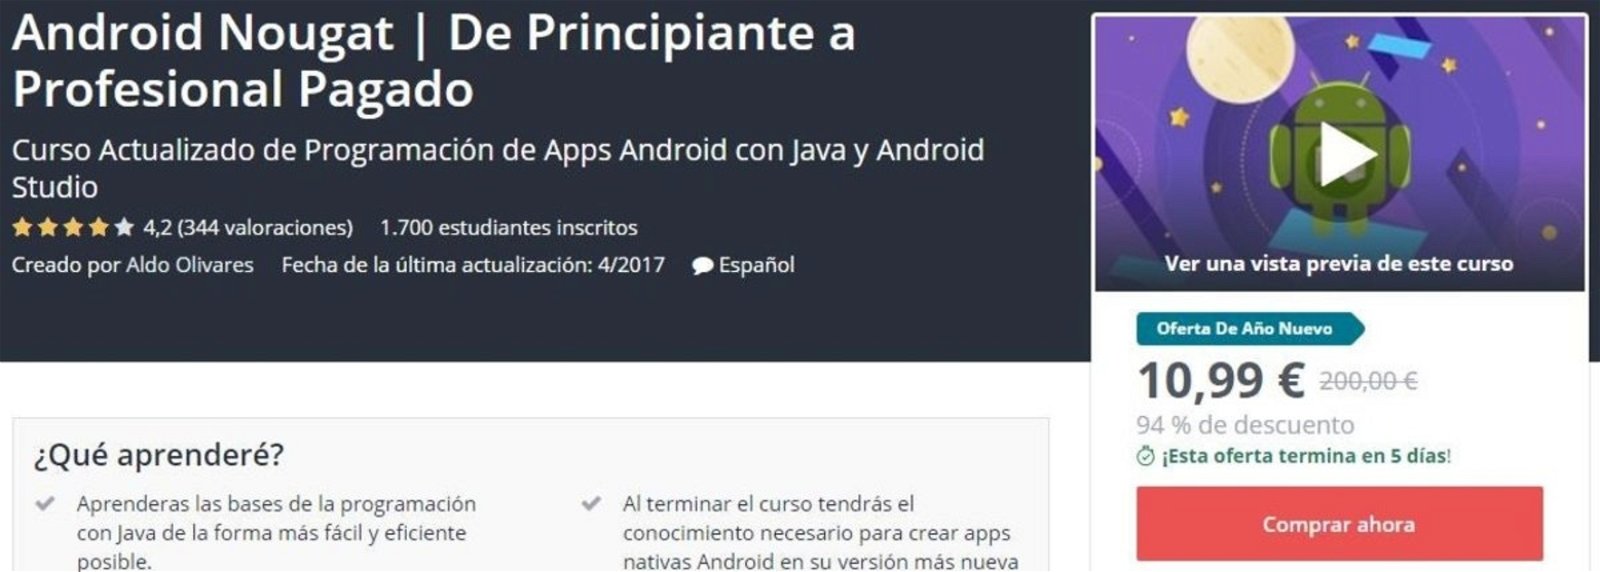 Android Nougat De Principiante a Profesional Pagado